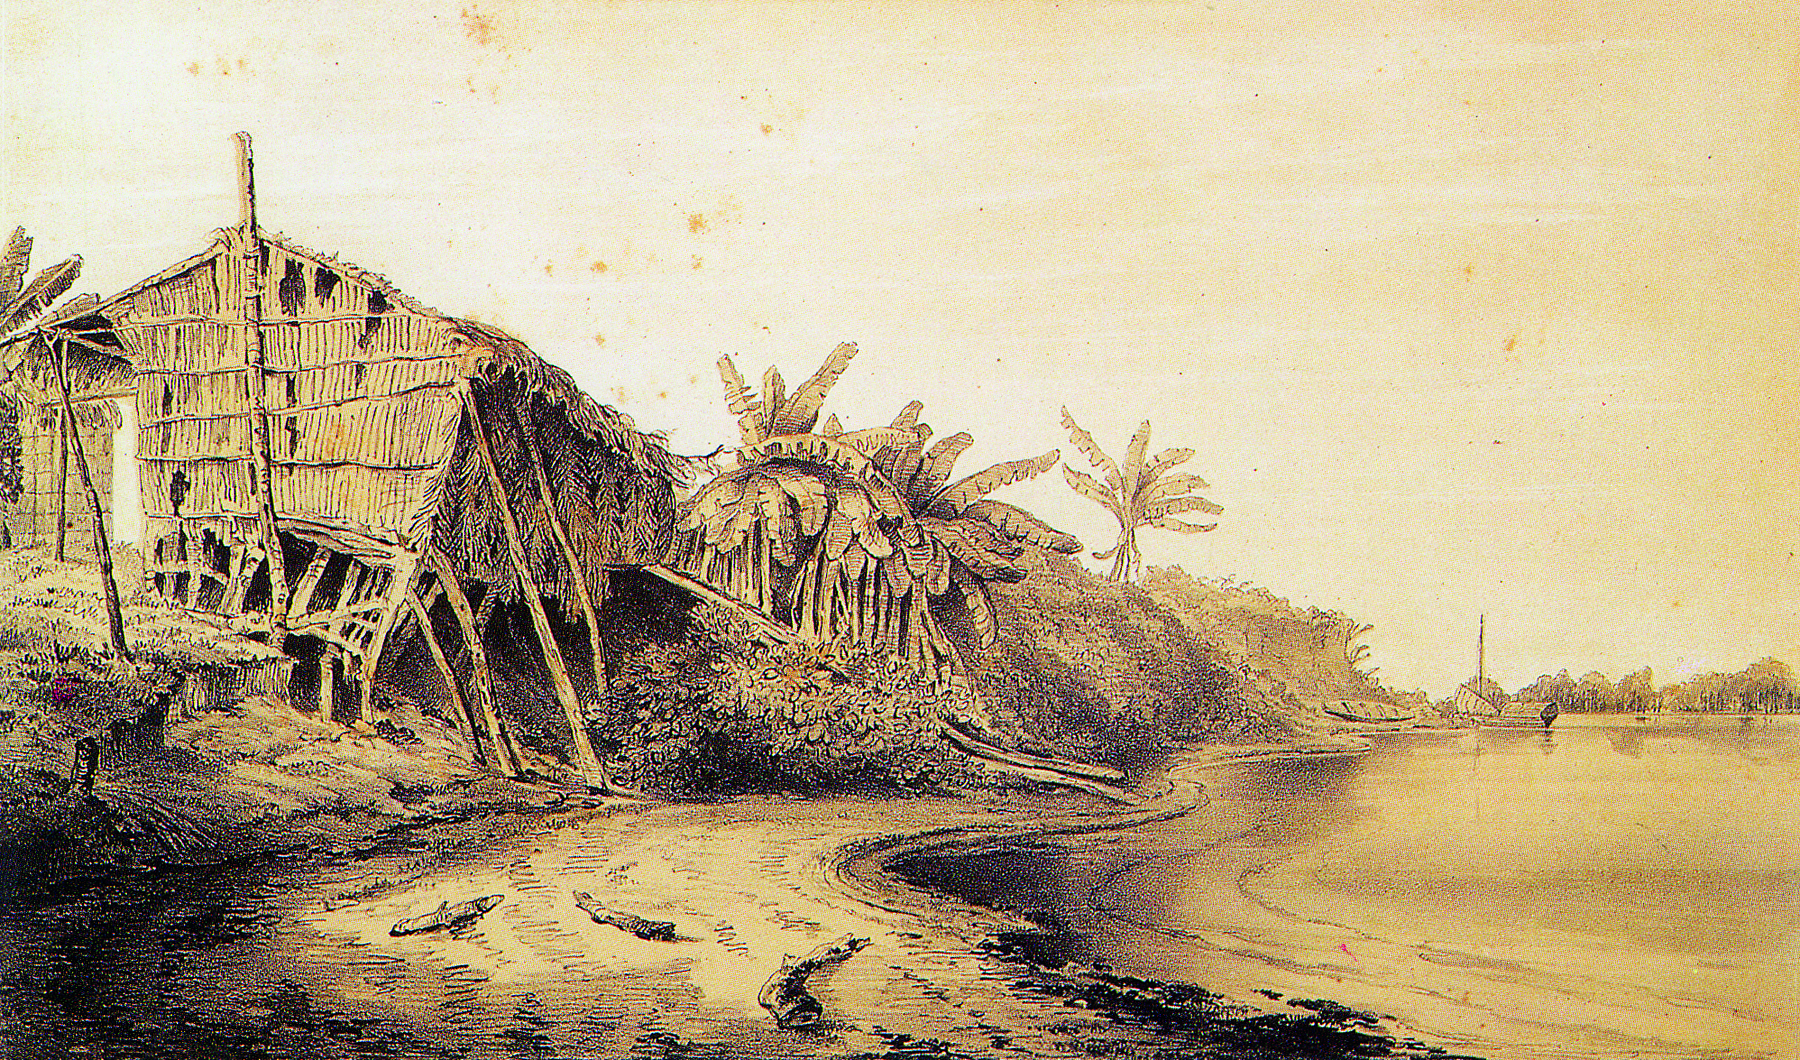 Litogravura. Representação de uma cabana rudimentar sobre um terreno às margens de um rio. No segundo plano, continuação do terreno às margens do rio, com palmeiras e arbustos.